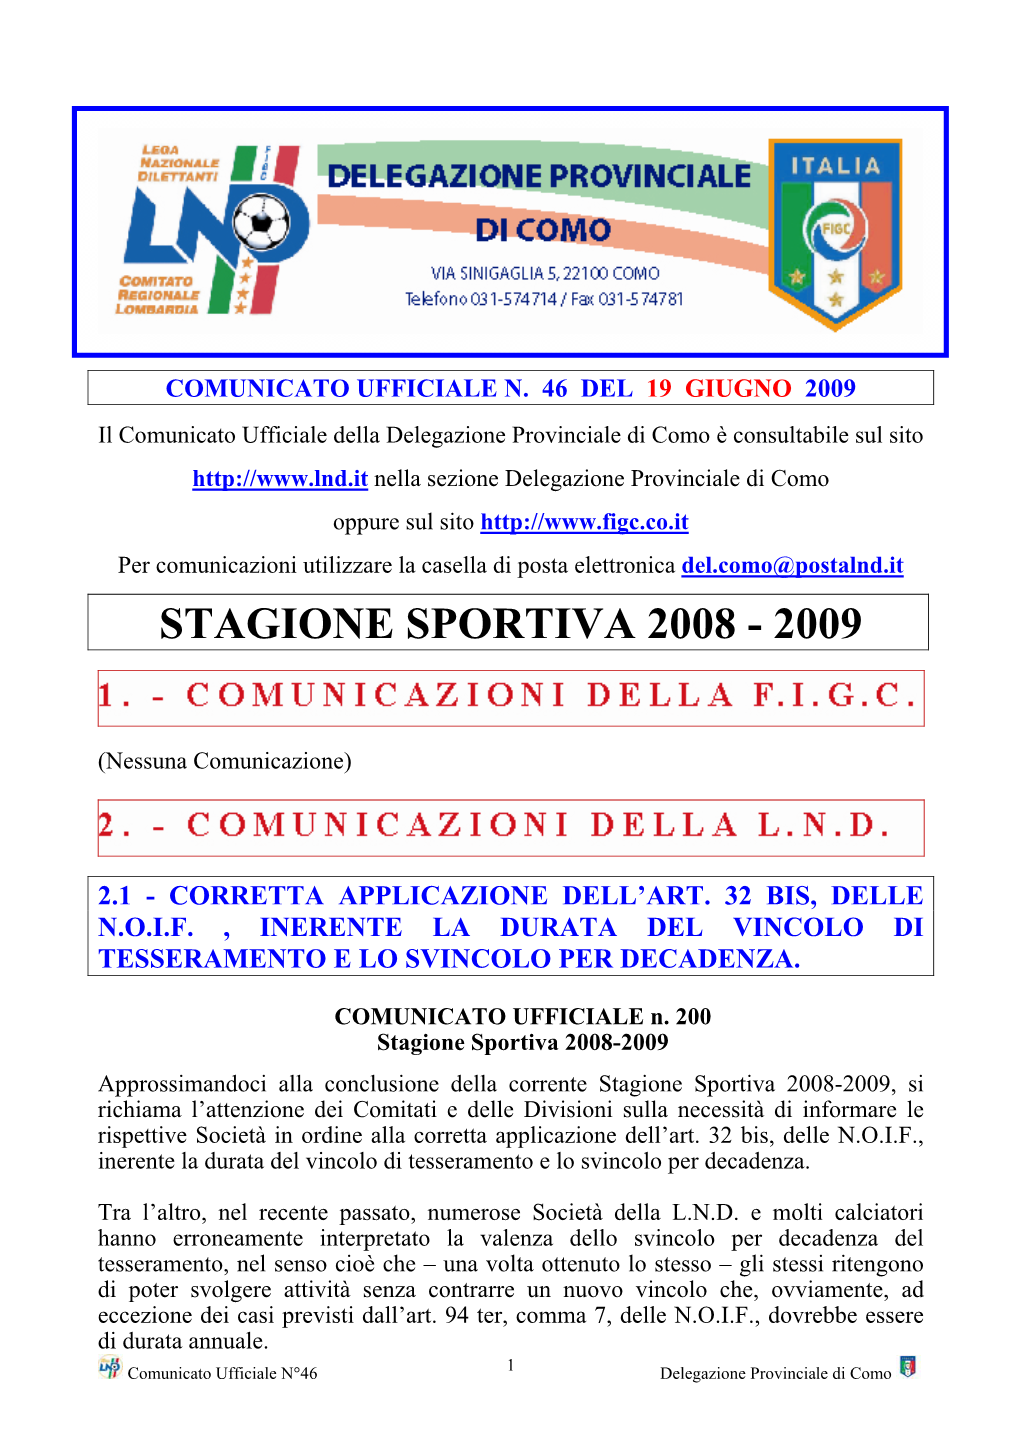 Stagione Sportiva 2008 - 2009